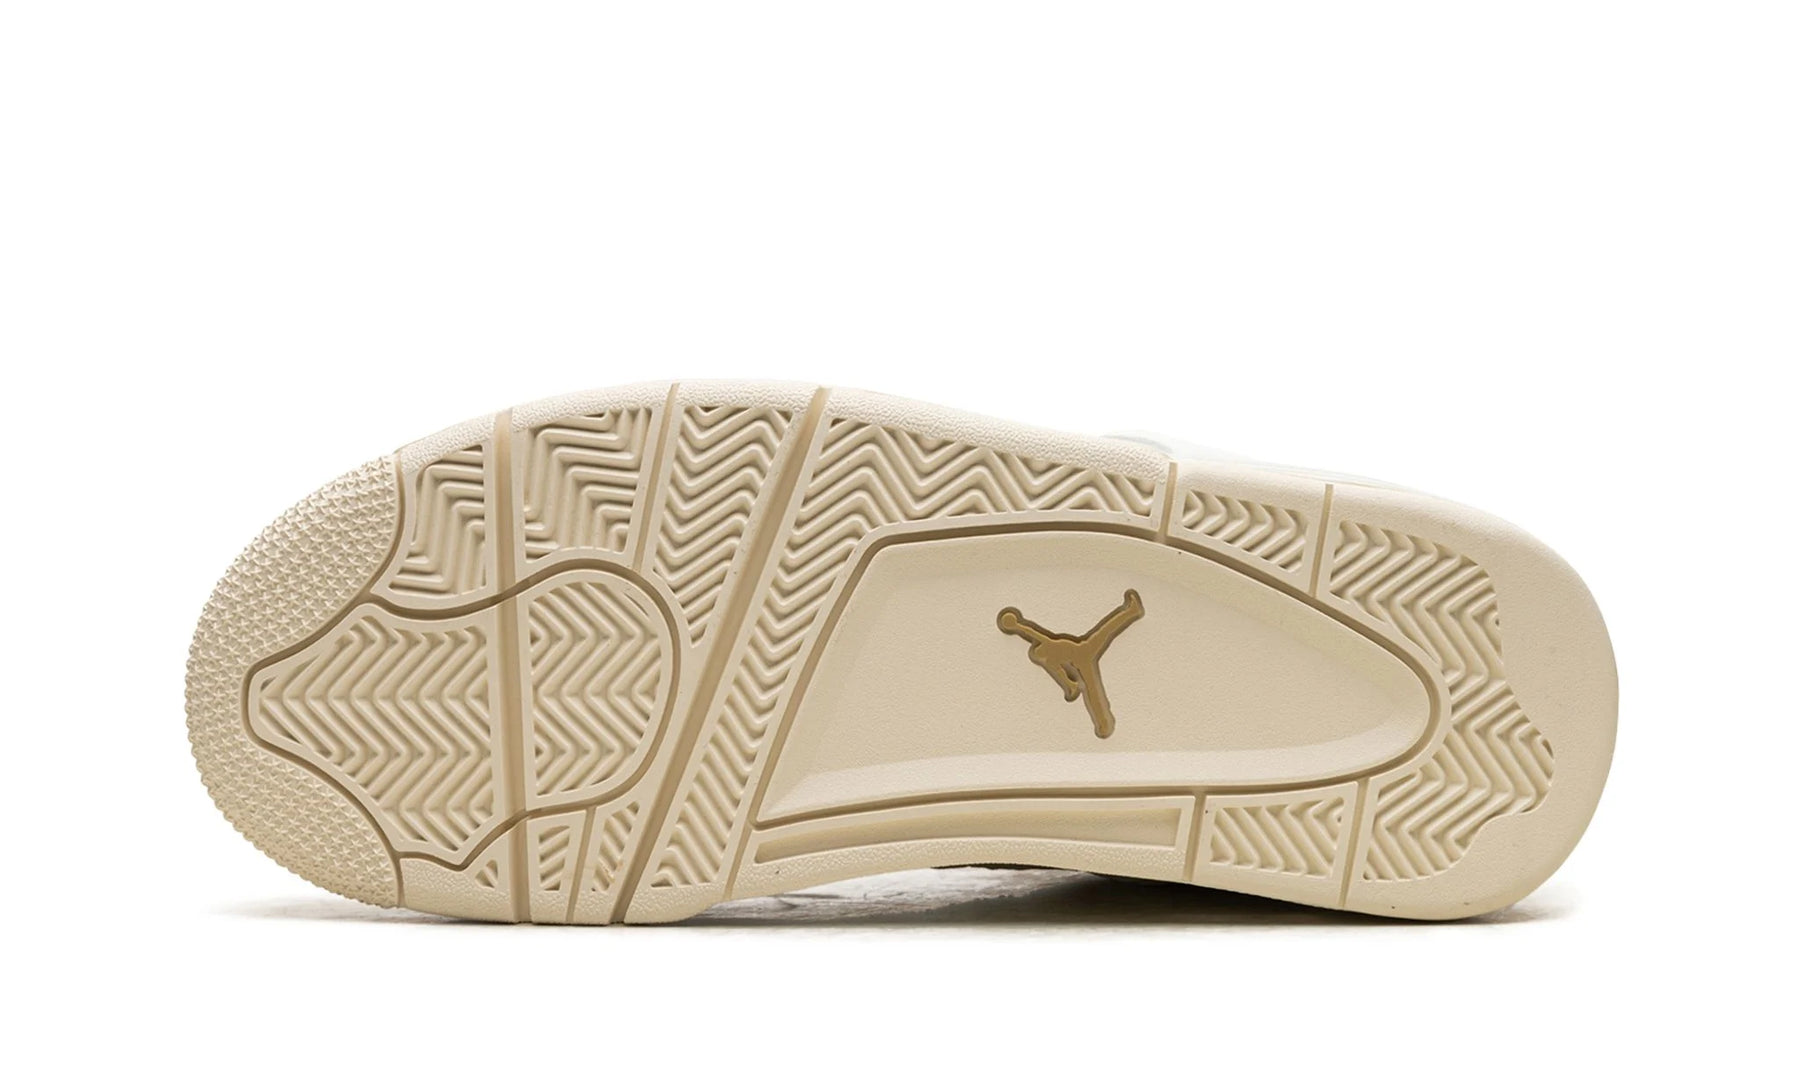 Air Jordan 4 WMNS “Metallic Gold"